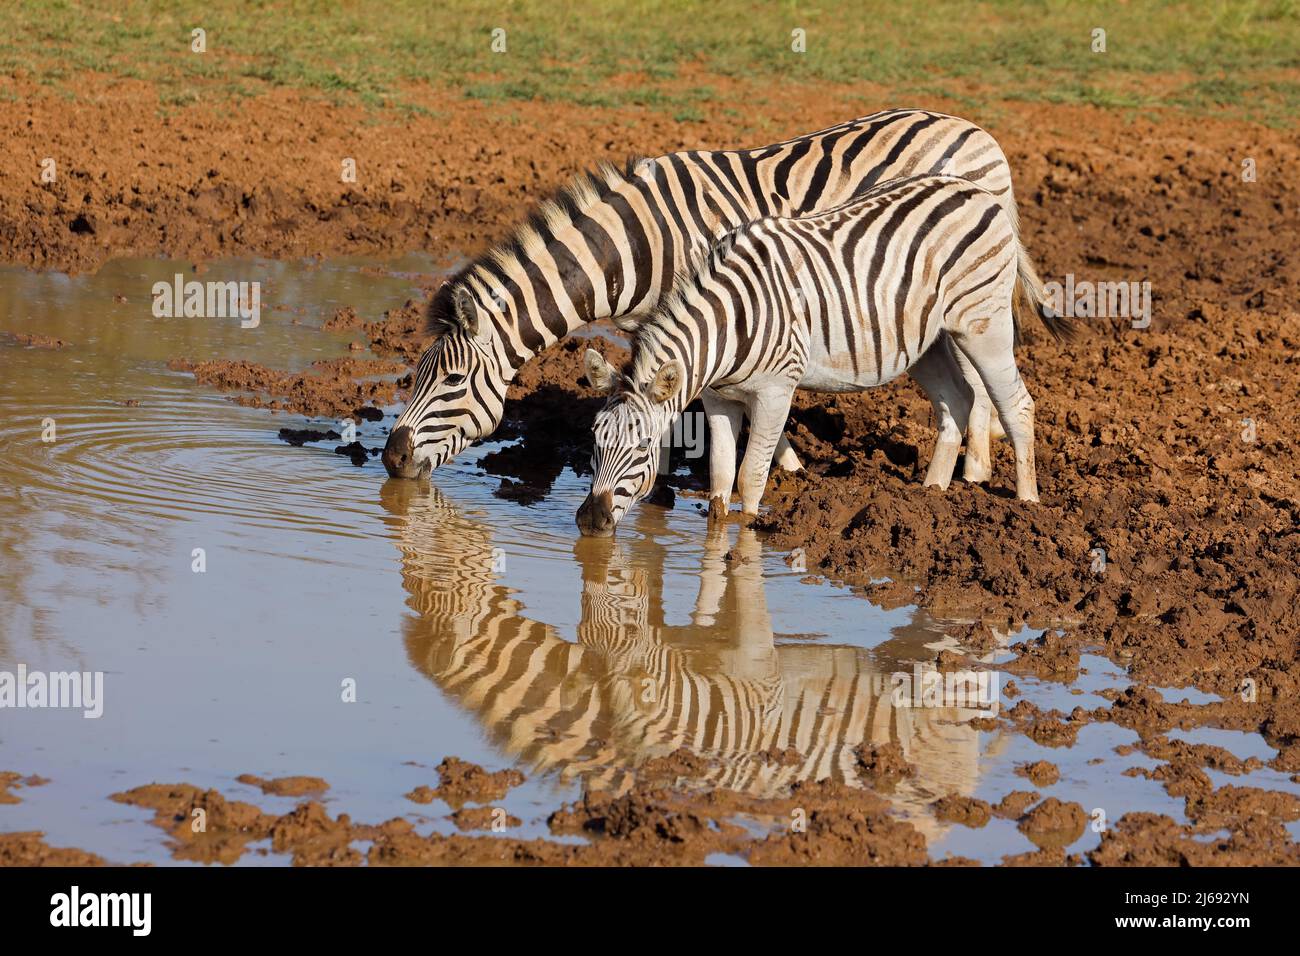 Zèbres des plaines (Equus burchelli) buvant dans un trou d'eau, parc national de Mokala, Afrique du Sud Banque D'Images